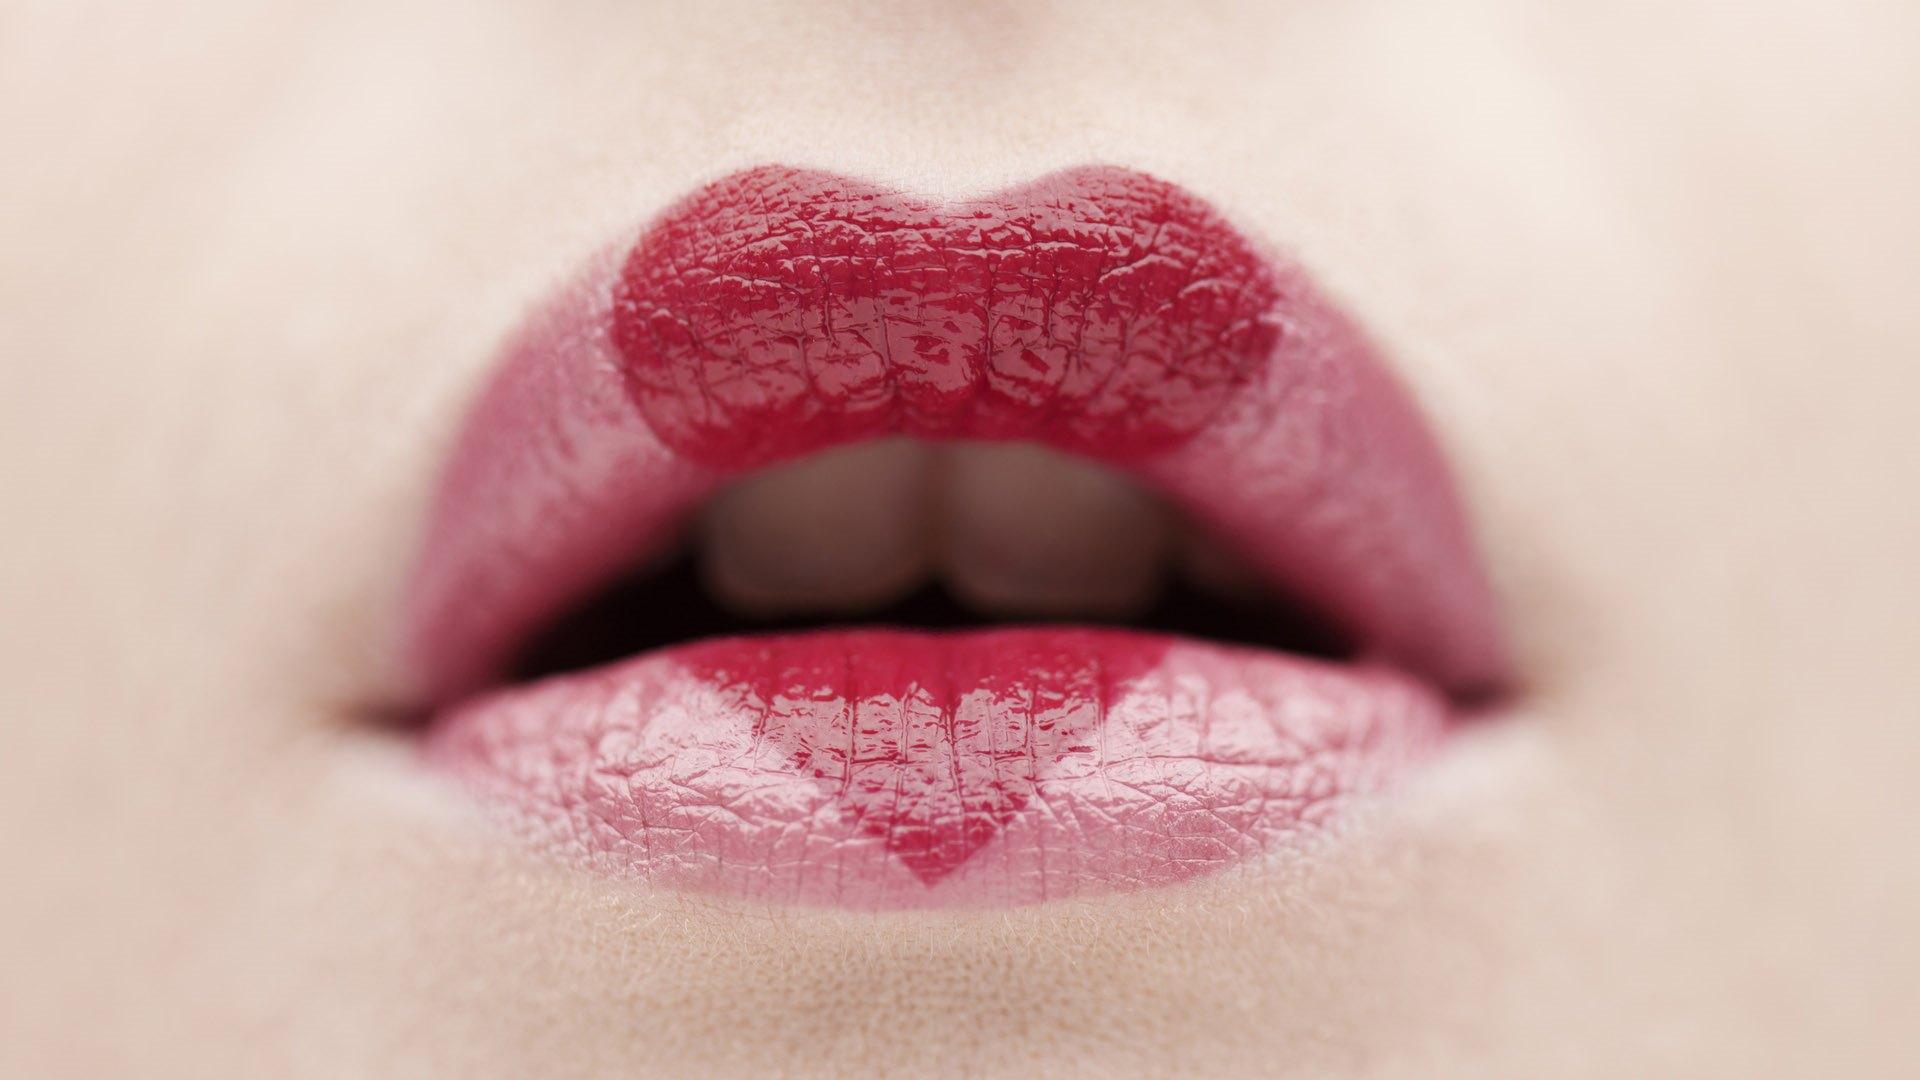 女性桃红色肥满嘴唇构成 库存照片. 图片 包括有 女性, 嘴唇, 表面, 部分, 制作, 关心, 人们, 填充 - 78196218